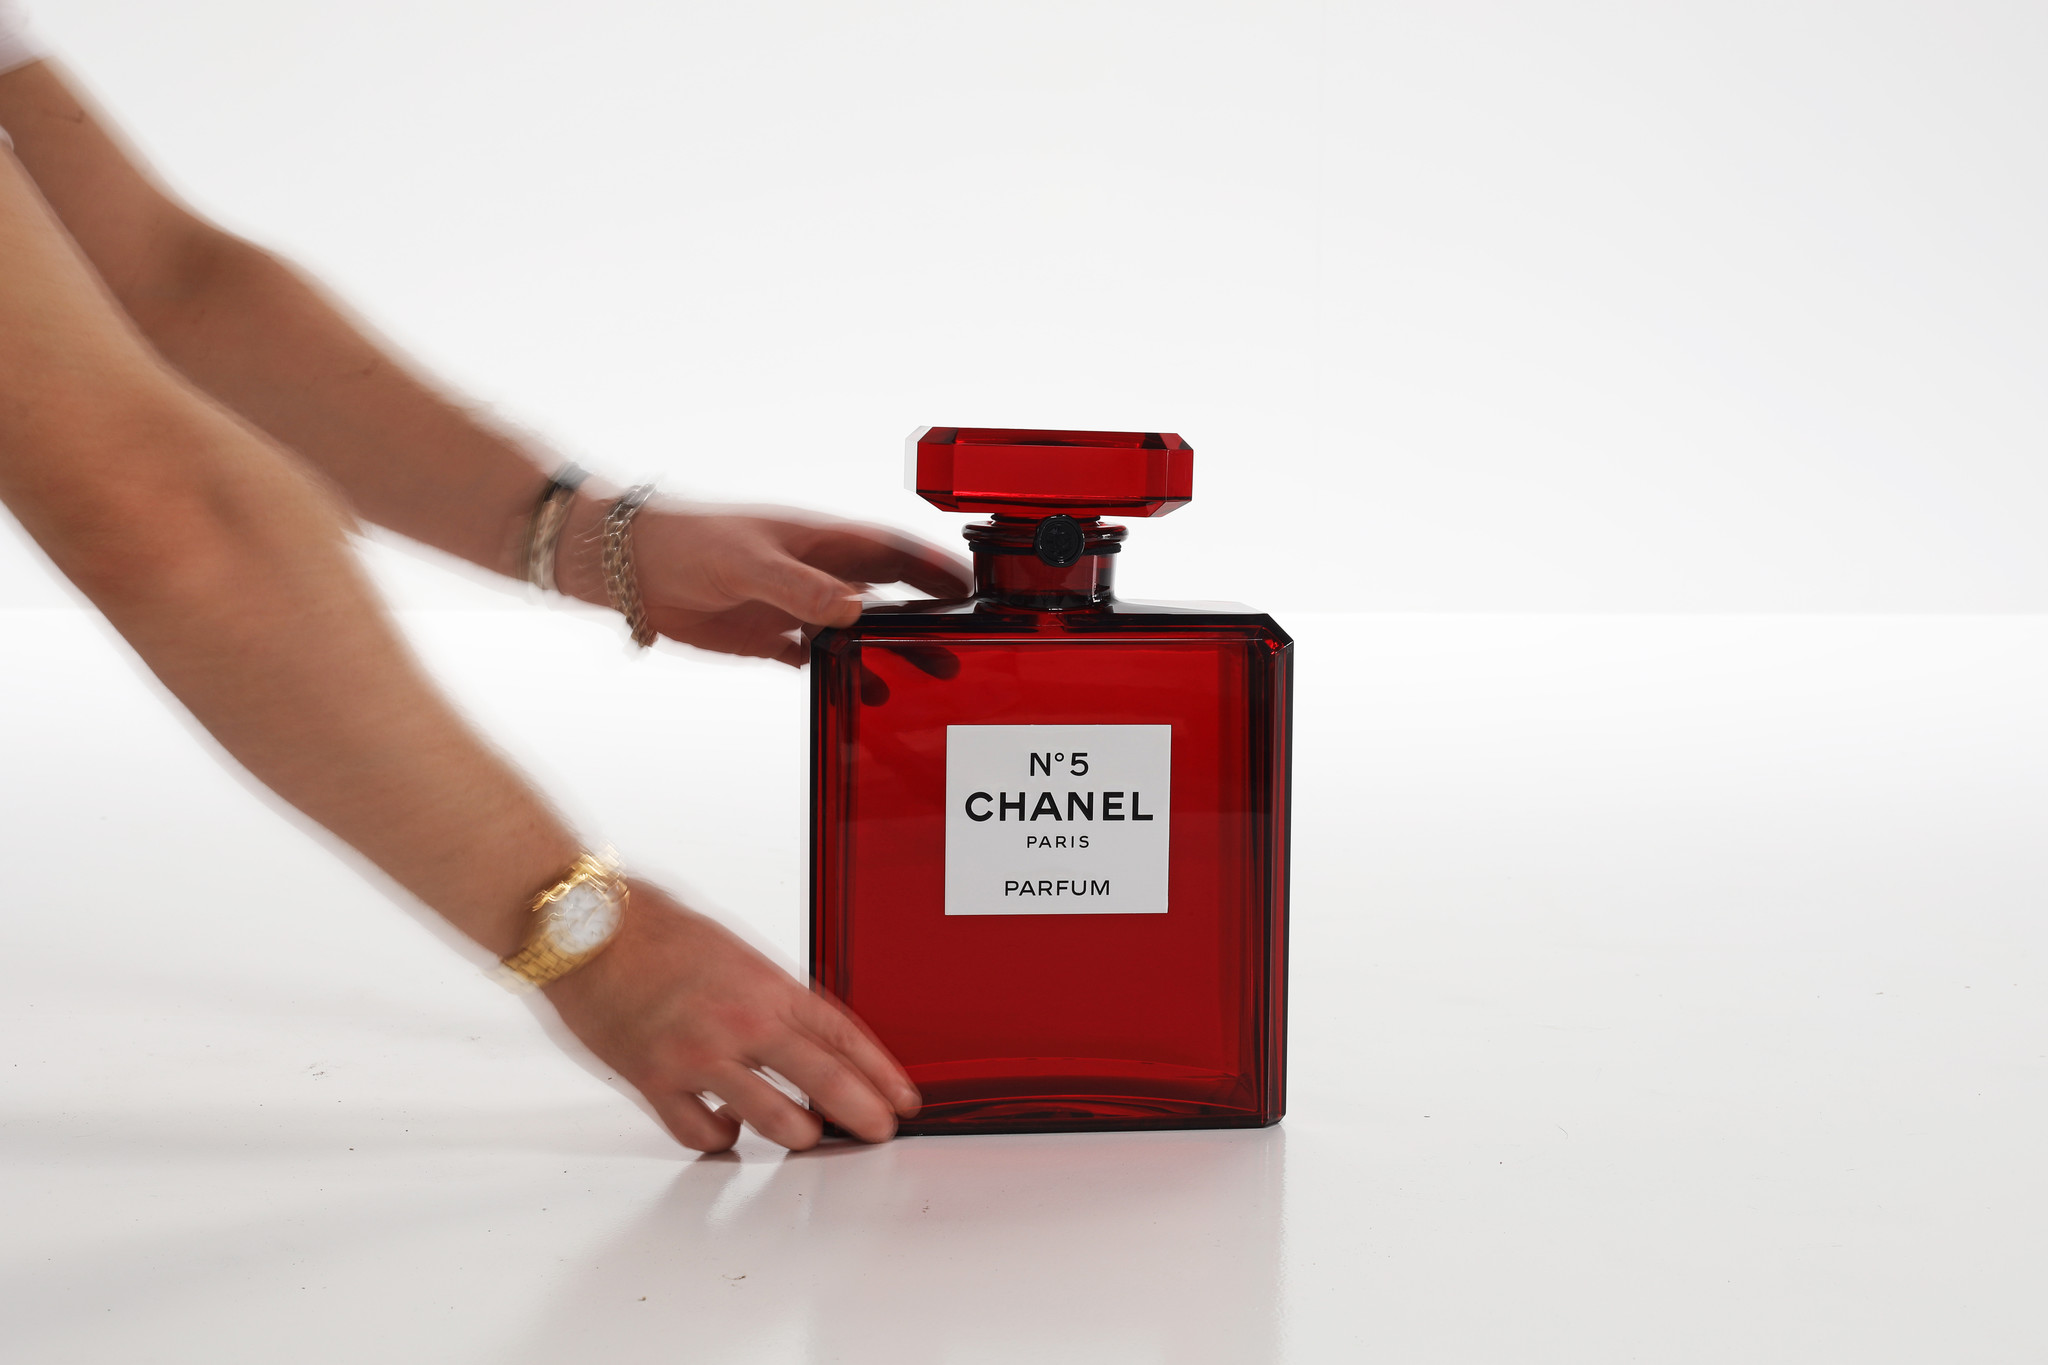 XXL Chanel limited edition factice - HET VAN WAUW